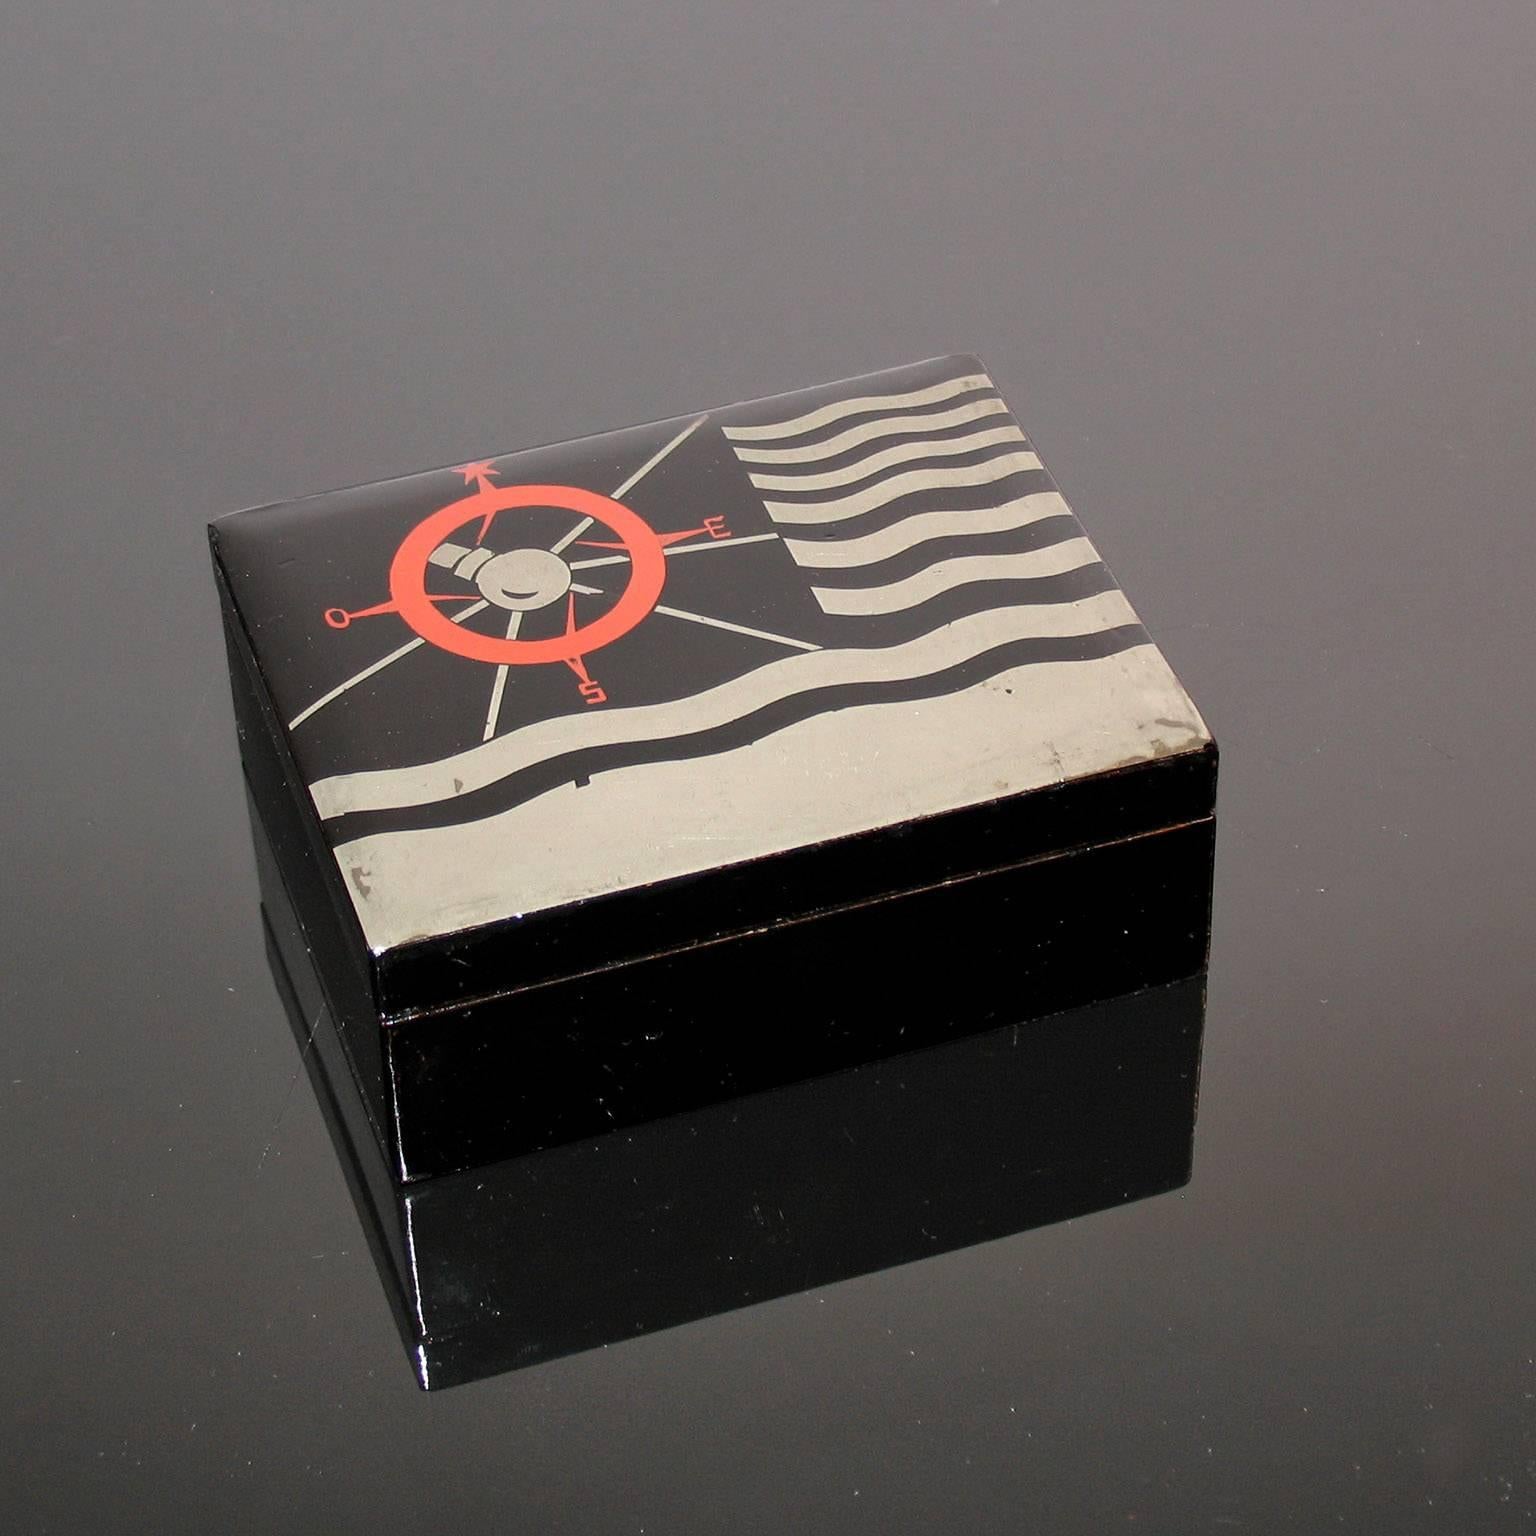 Boîte à bijoux décorative laquée Art Déco.
Boîte Art déco, fond laqué noir, décorée de lignes argentées ondulées et d'une rose des vents en rouge. Inscrit à l'intérieur du couvercle 